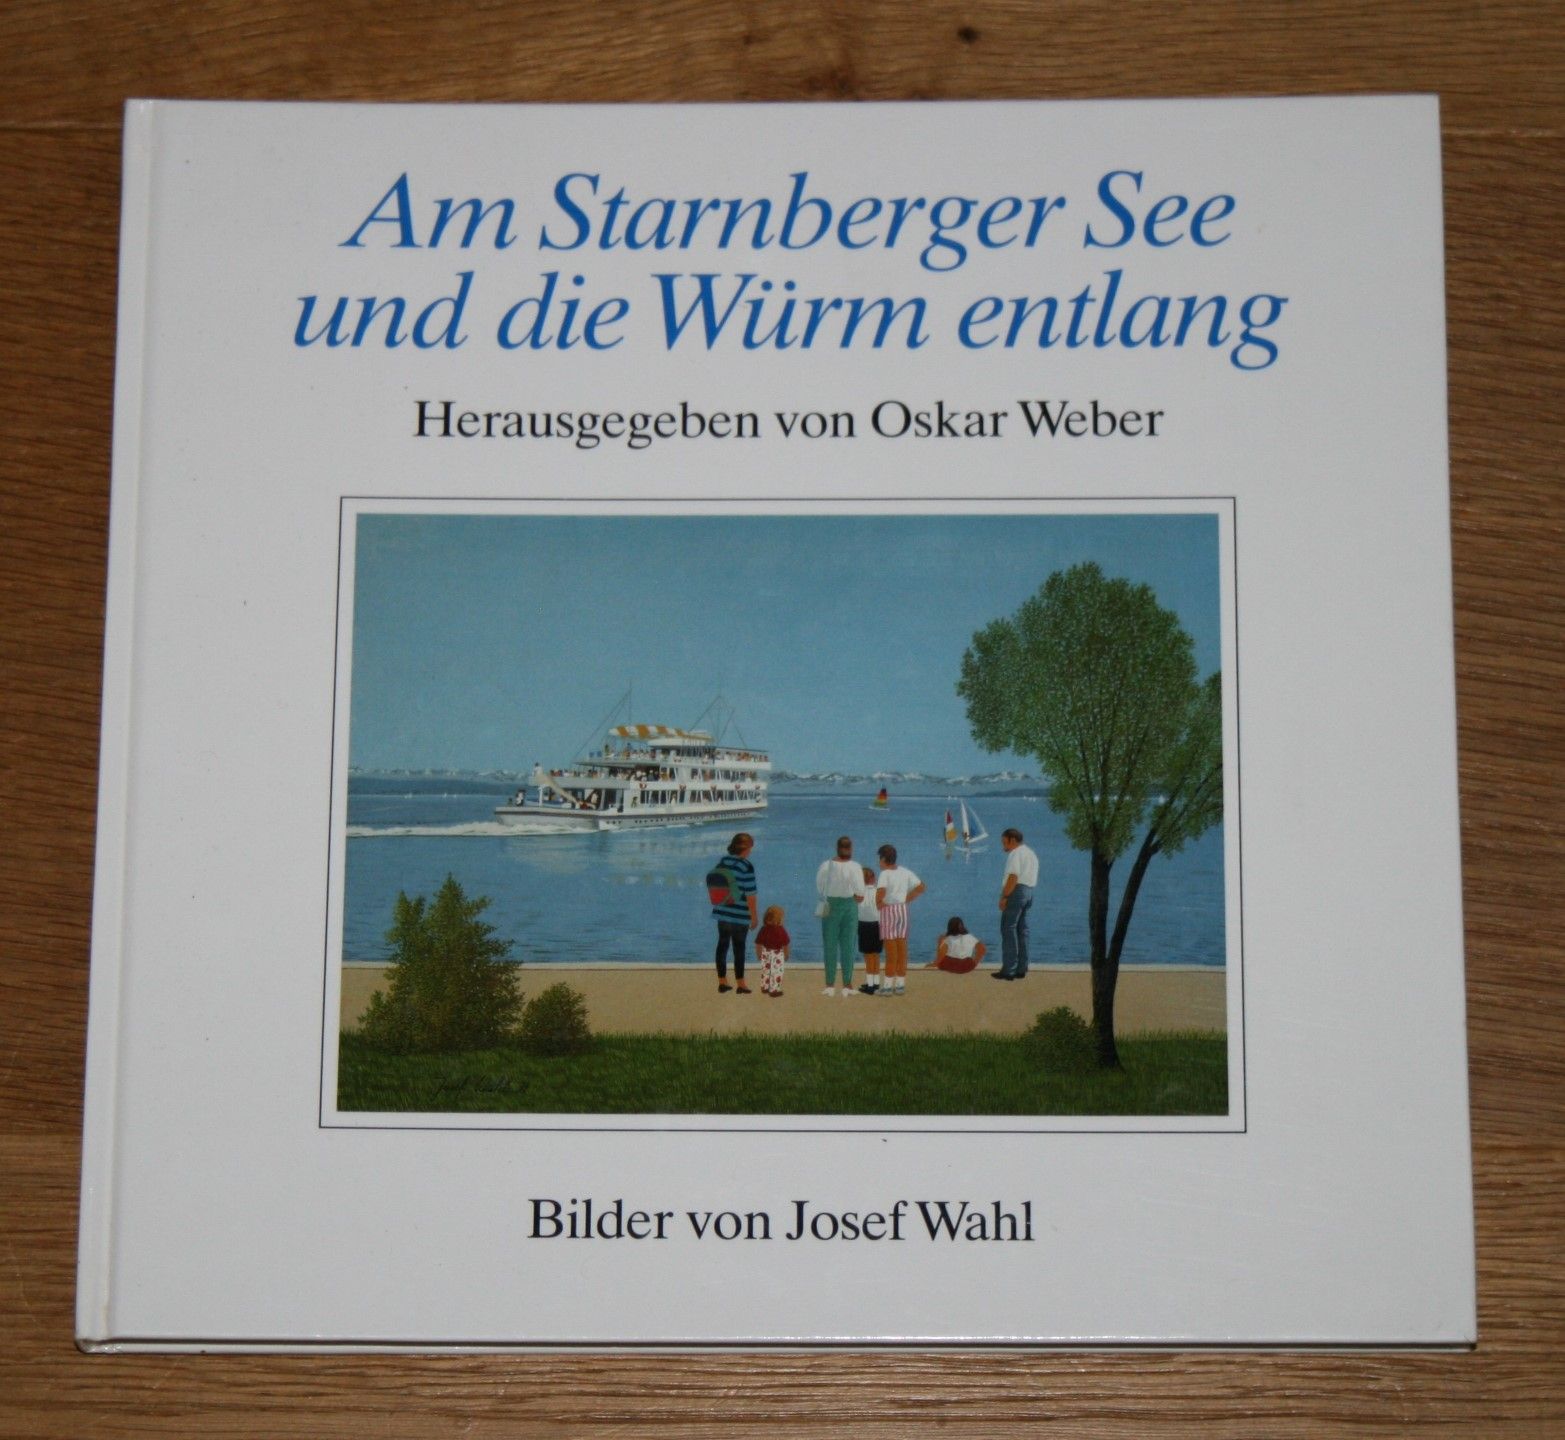 Am Starnberger See und die Würm entlang. Signiert und mit Karikatur von Josef Wahl. - Weber, Oskar und Josef Wahl